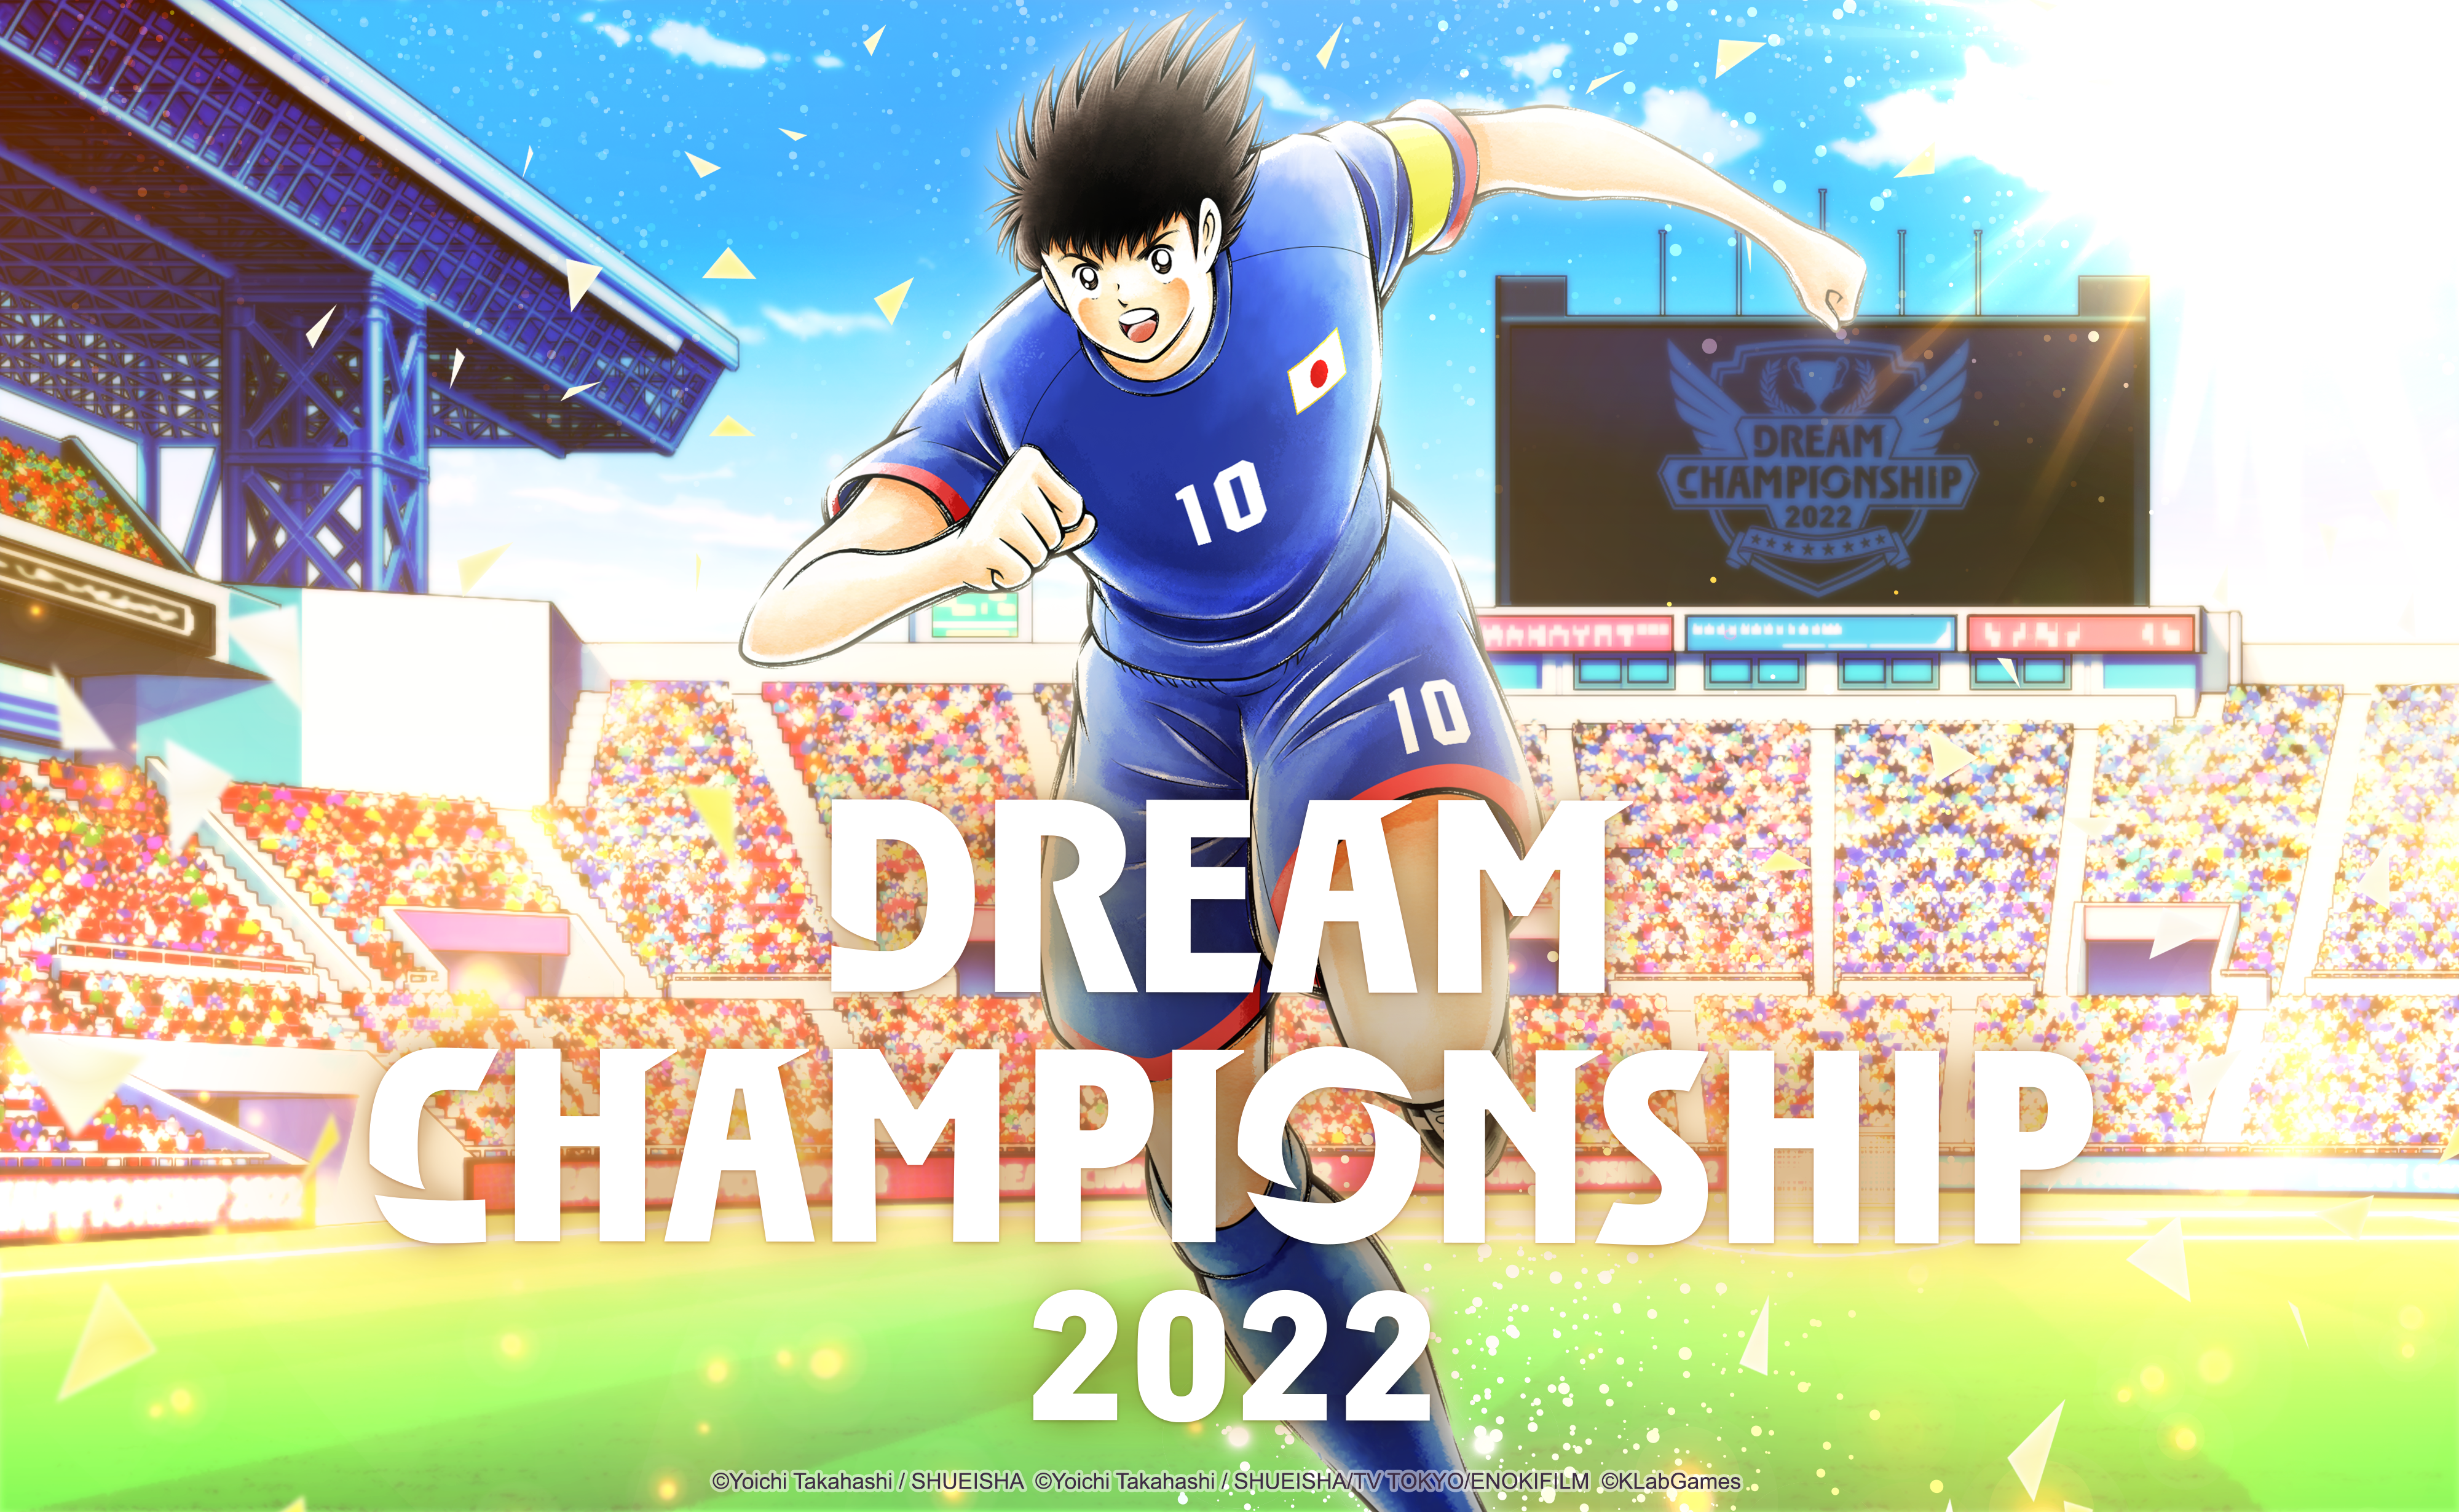 เกม “กัปตันซึบาสะ: ดรีมทีม (Captain Tsubasa: Dream Team)”เปิดทัวร์นาเมนต์คัดเลือกผู้เข้าร่วมแข่งขันออนไลน์ทั่วโลก ดรีม แชมเปียนชิพ 2022 (Dream Championship 2022) ในเดือนกันยายน พร้อมกับเปิดตัวเว็บไซต์ในวันนี้ 